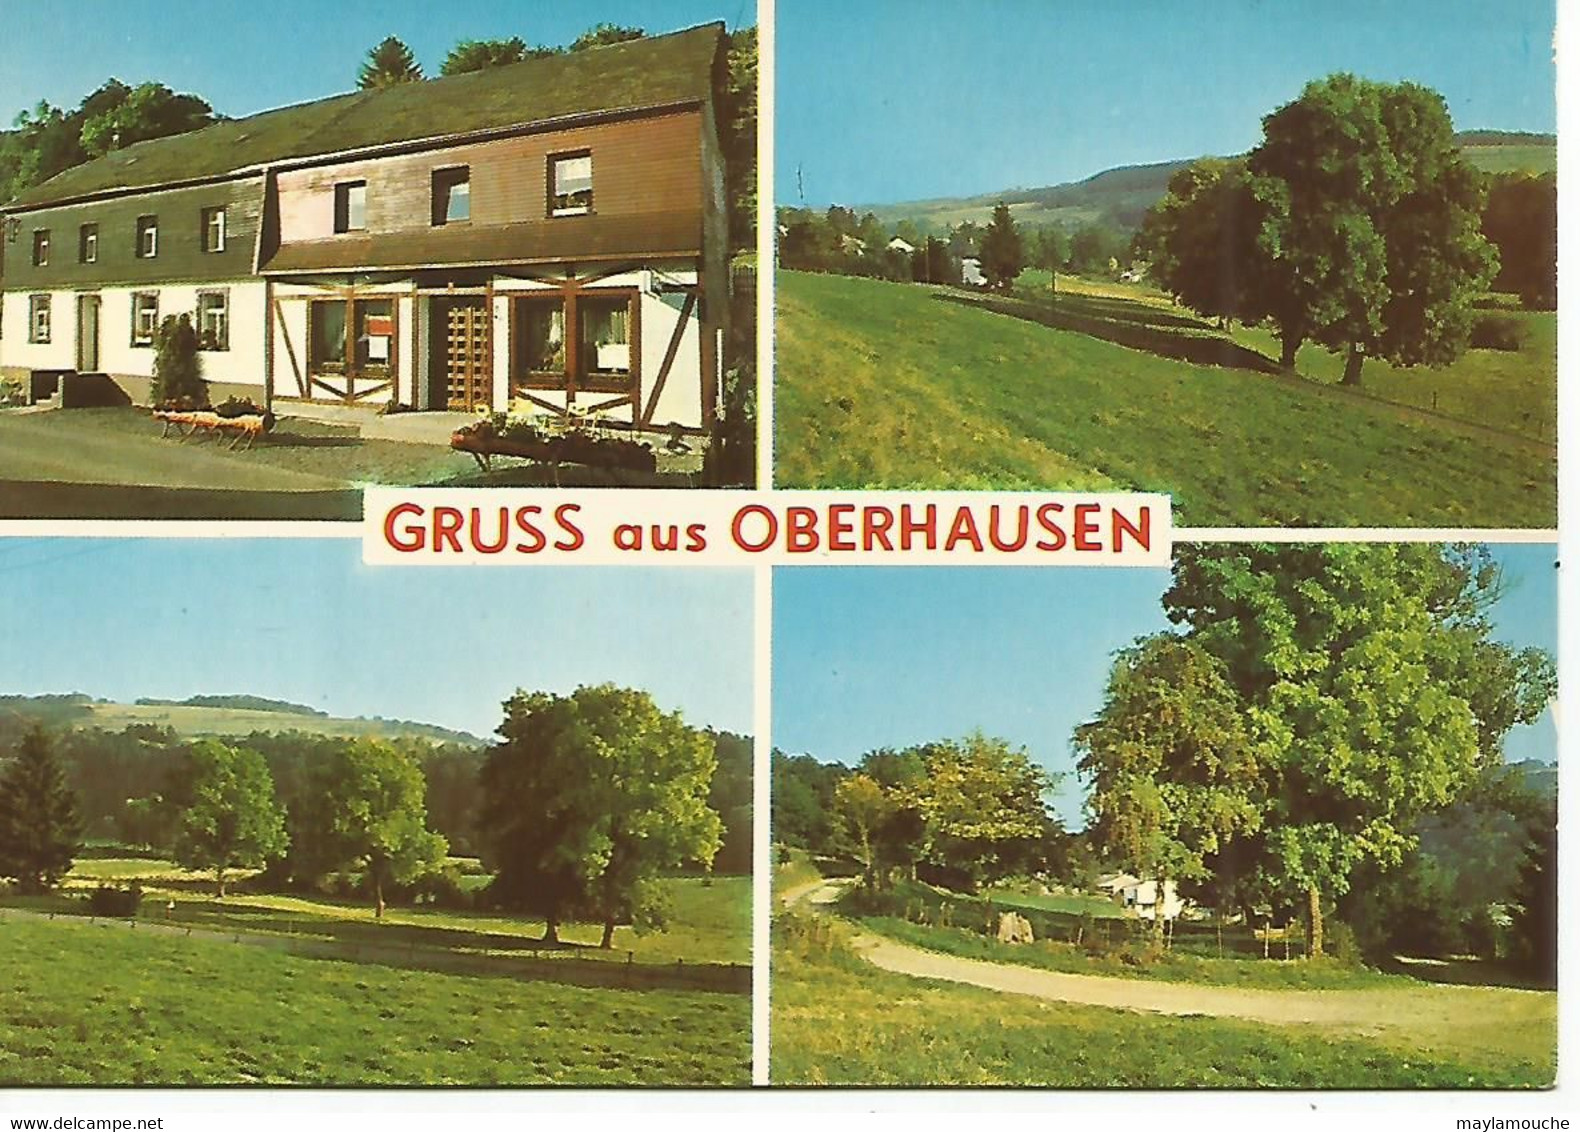 Oberhausen - Burg-Reuland